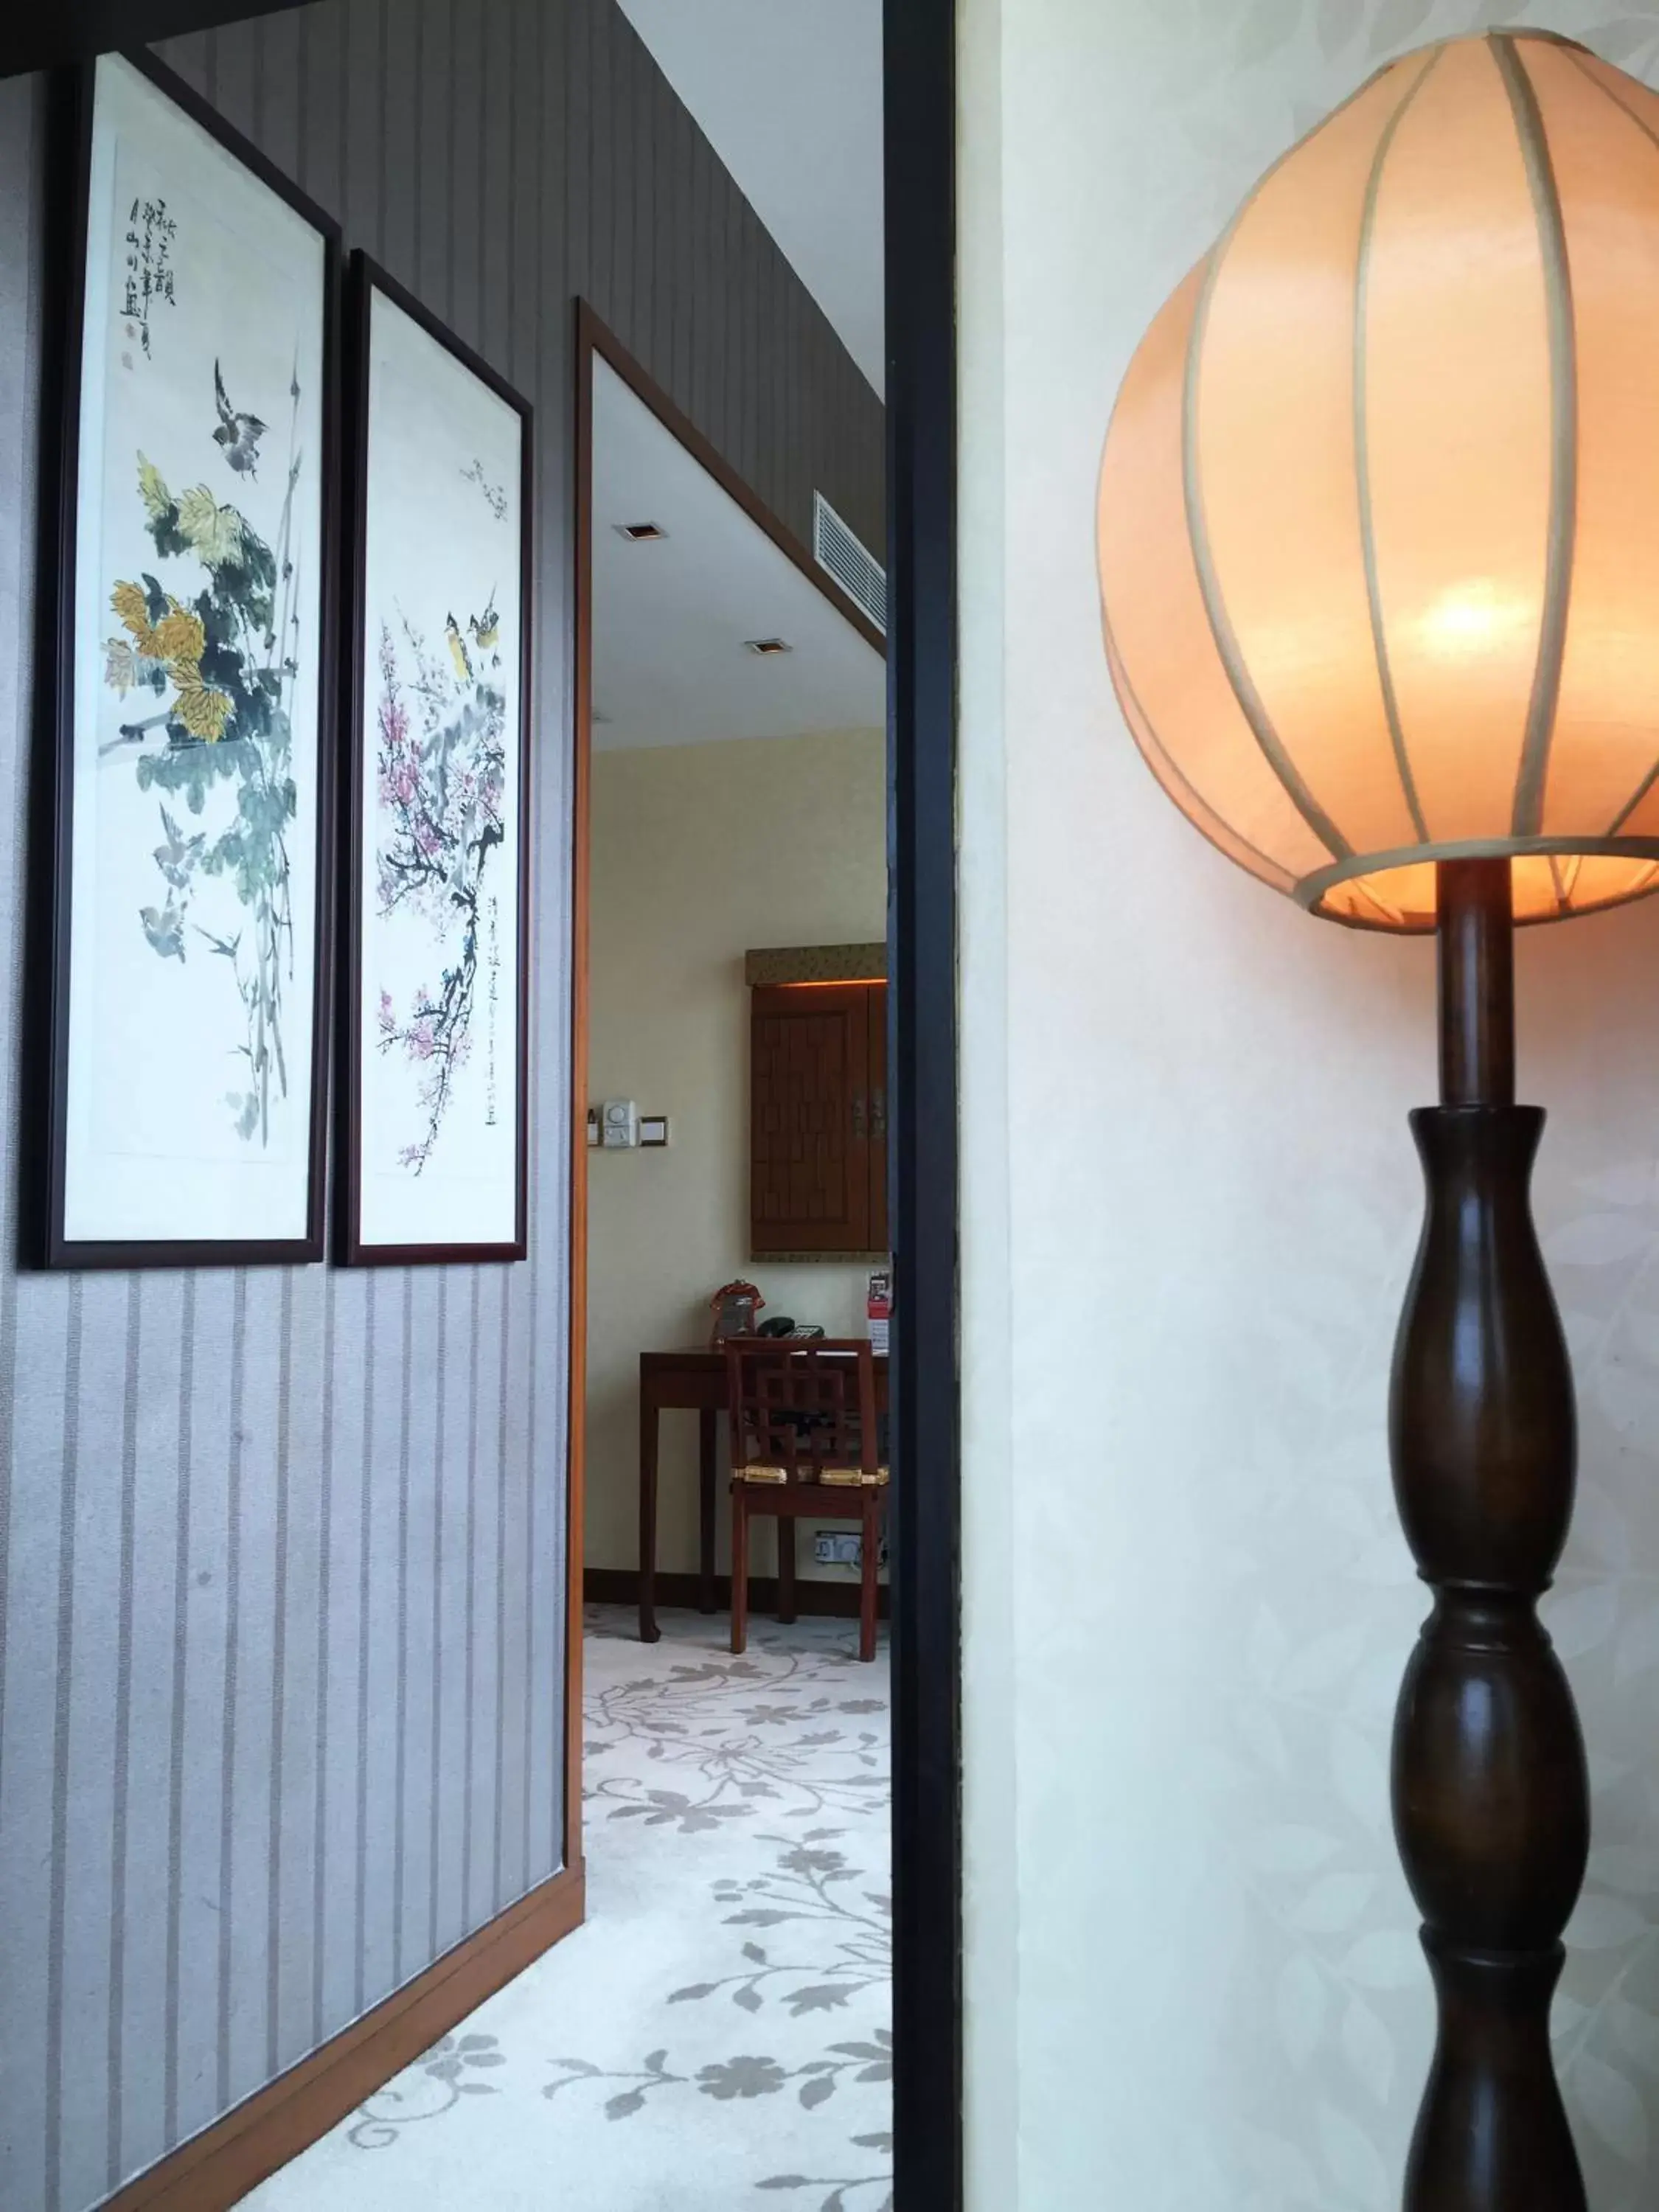 Decorative detail, Lounge/Bar in Lan Kwai Fong Hotel - Kau U Fong